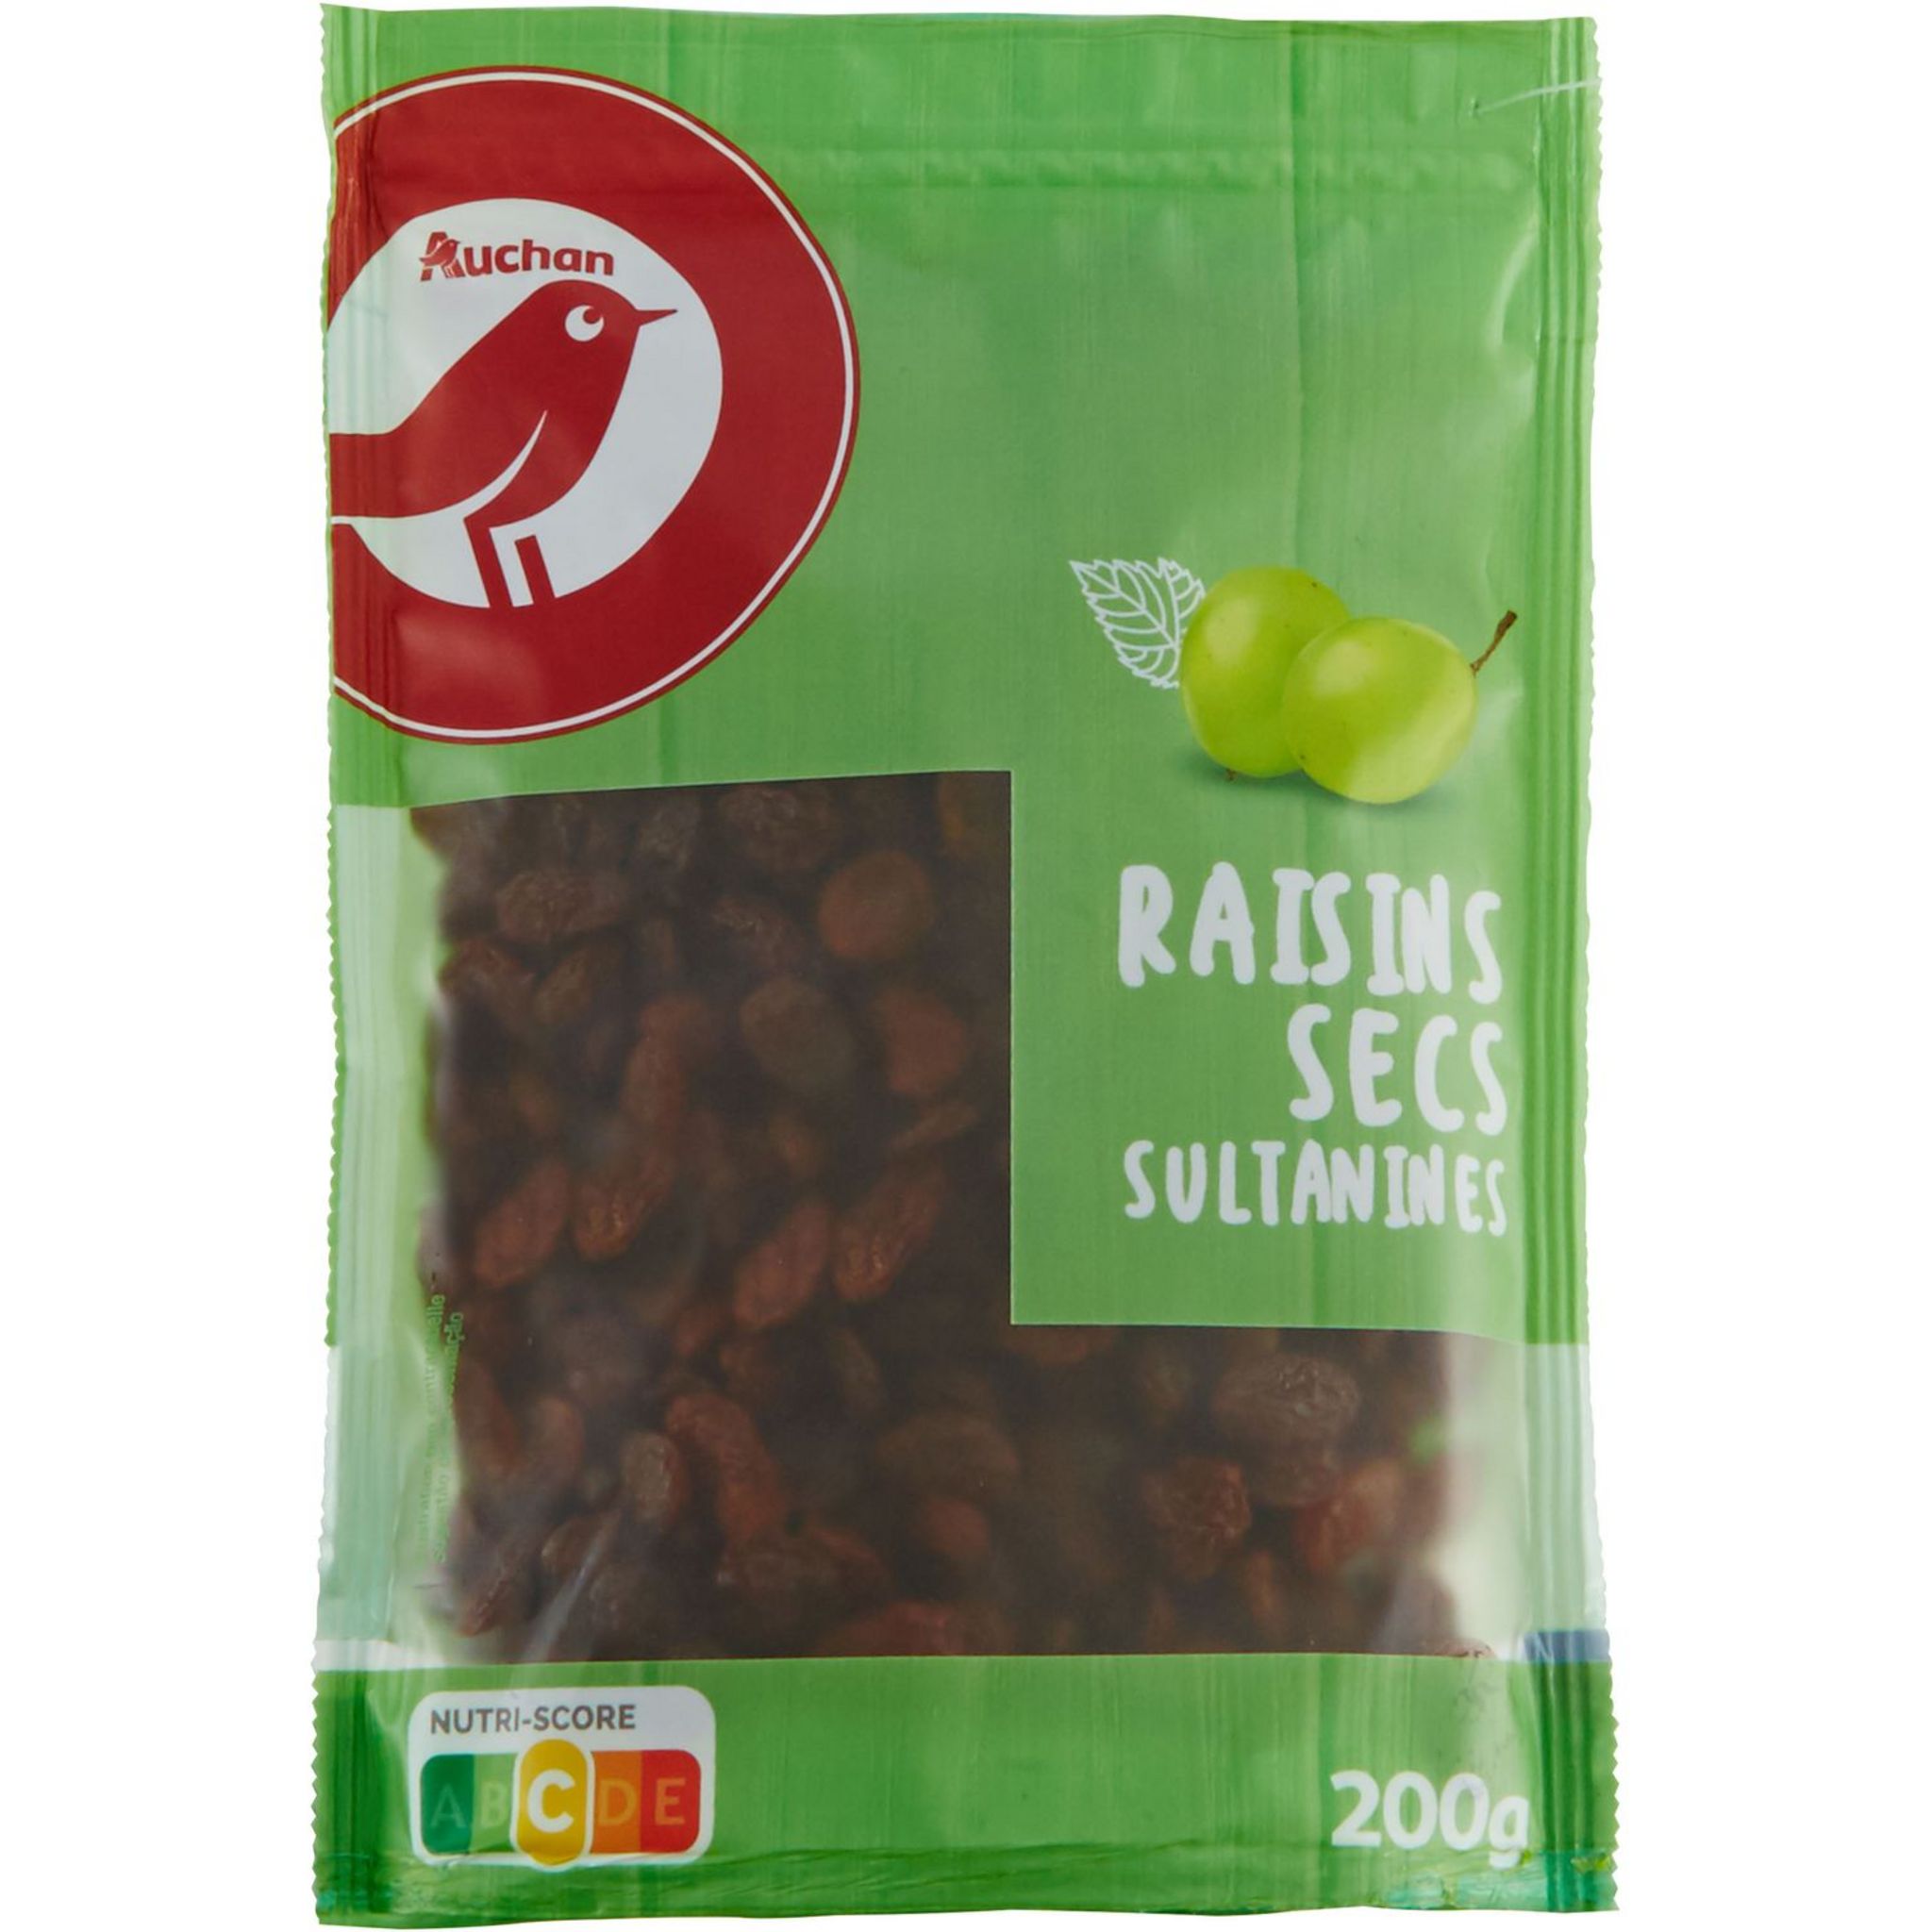 AUCHAN Raisins secs sultanines 200g pas cher 